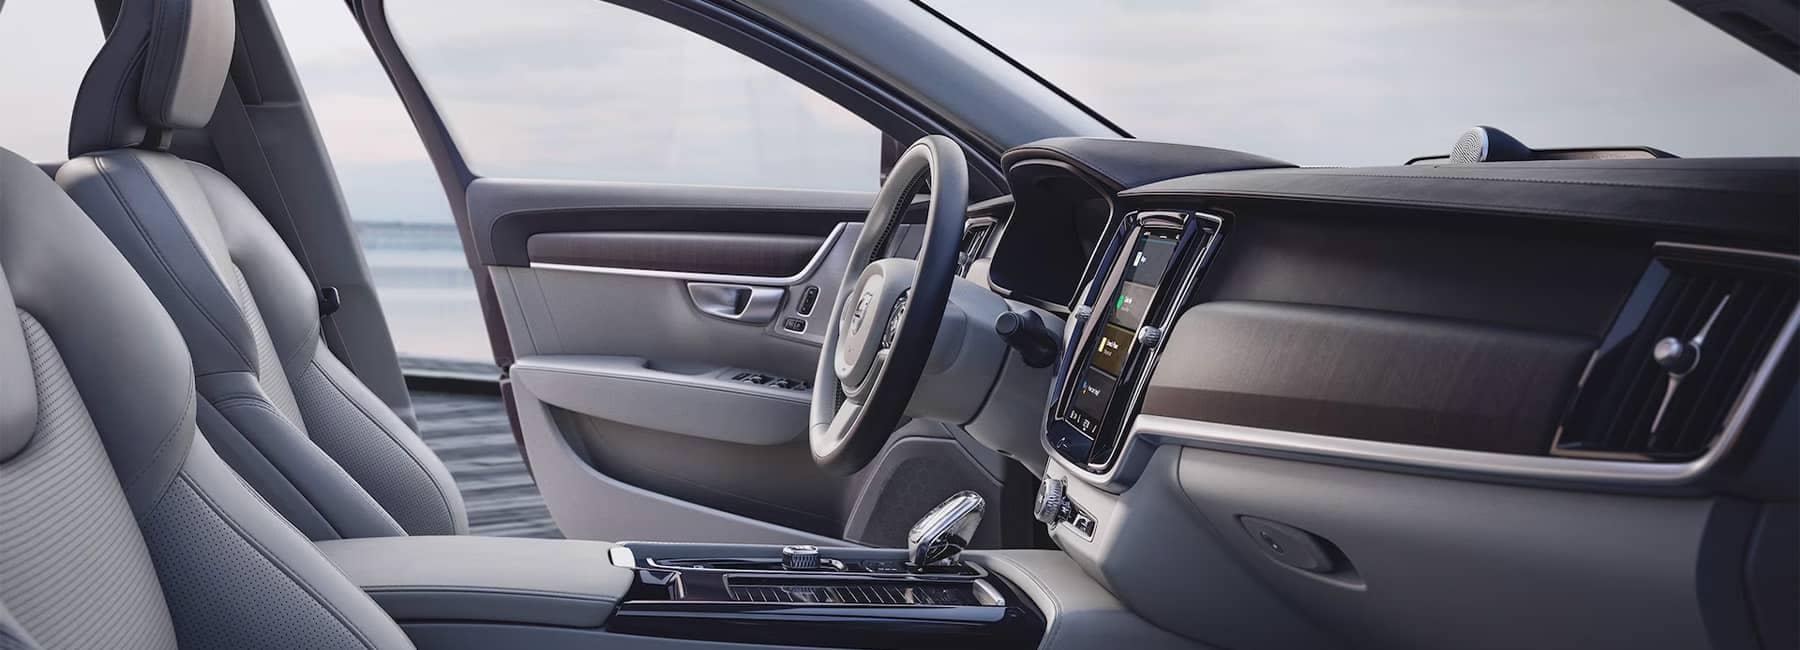 S90 Hybrid Interior Dashboard